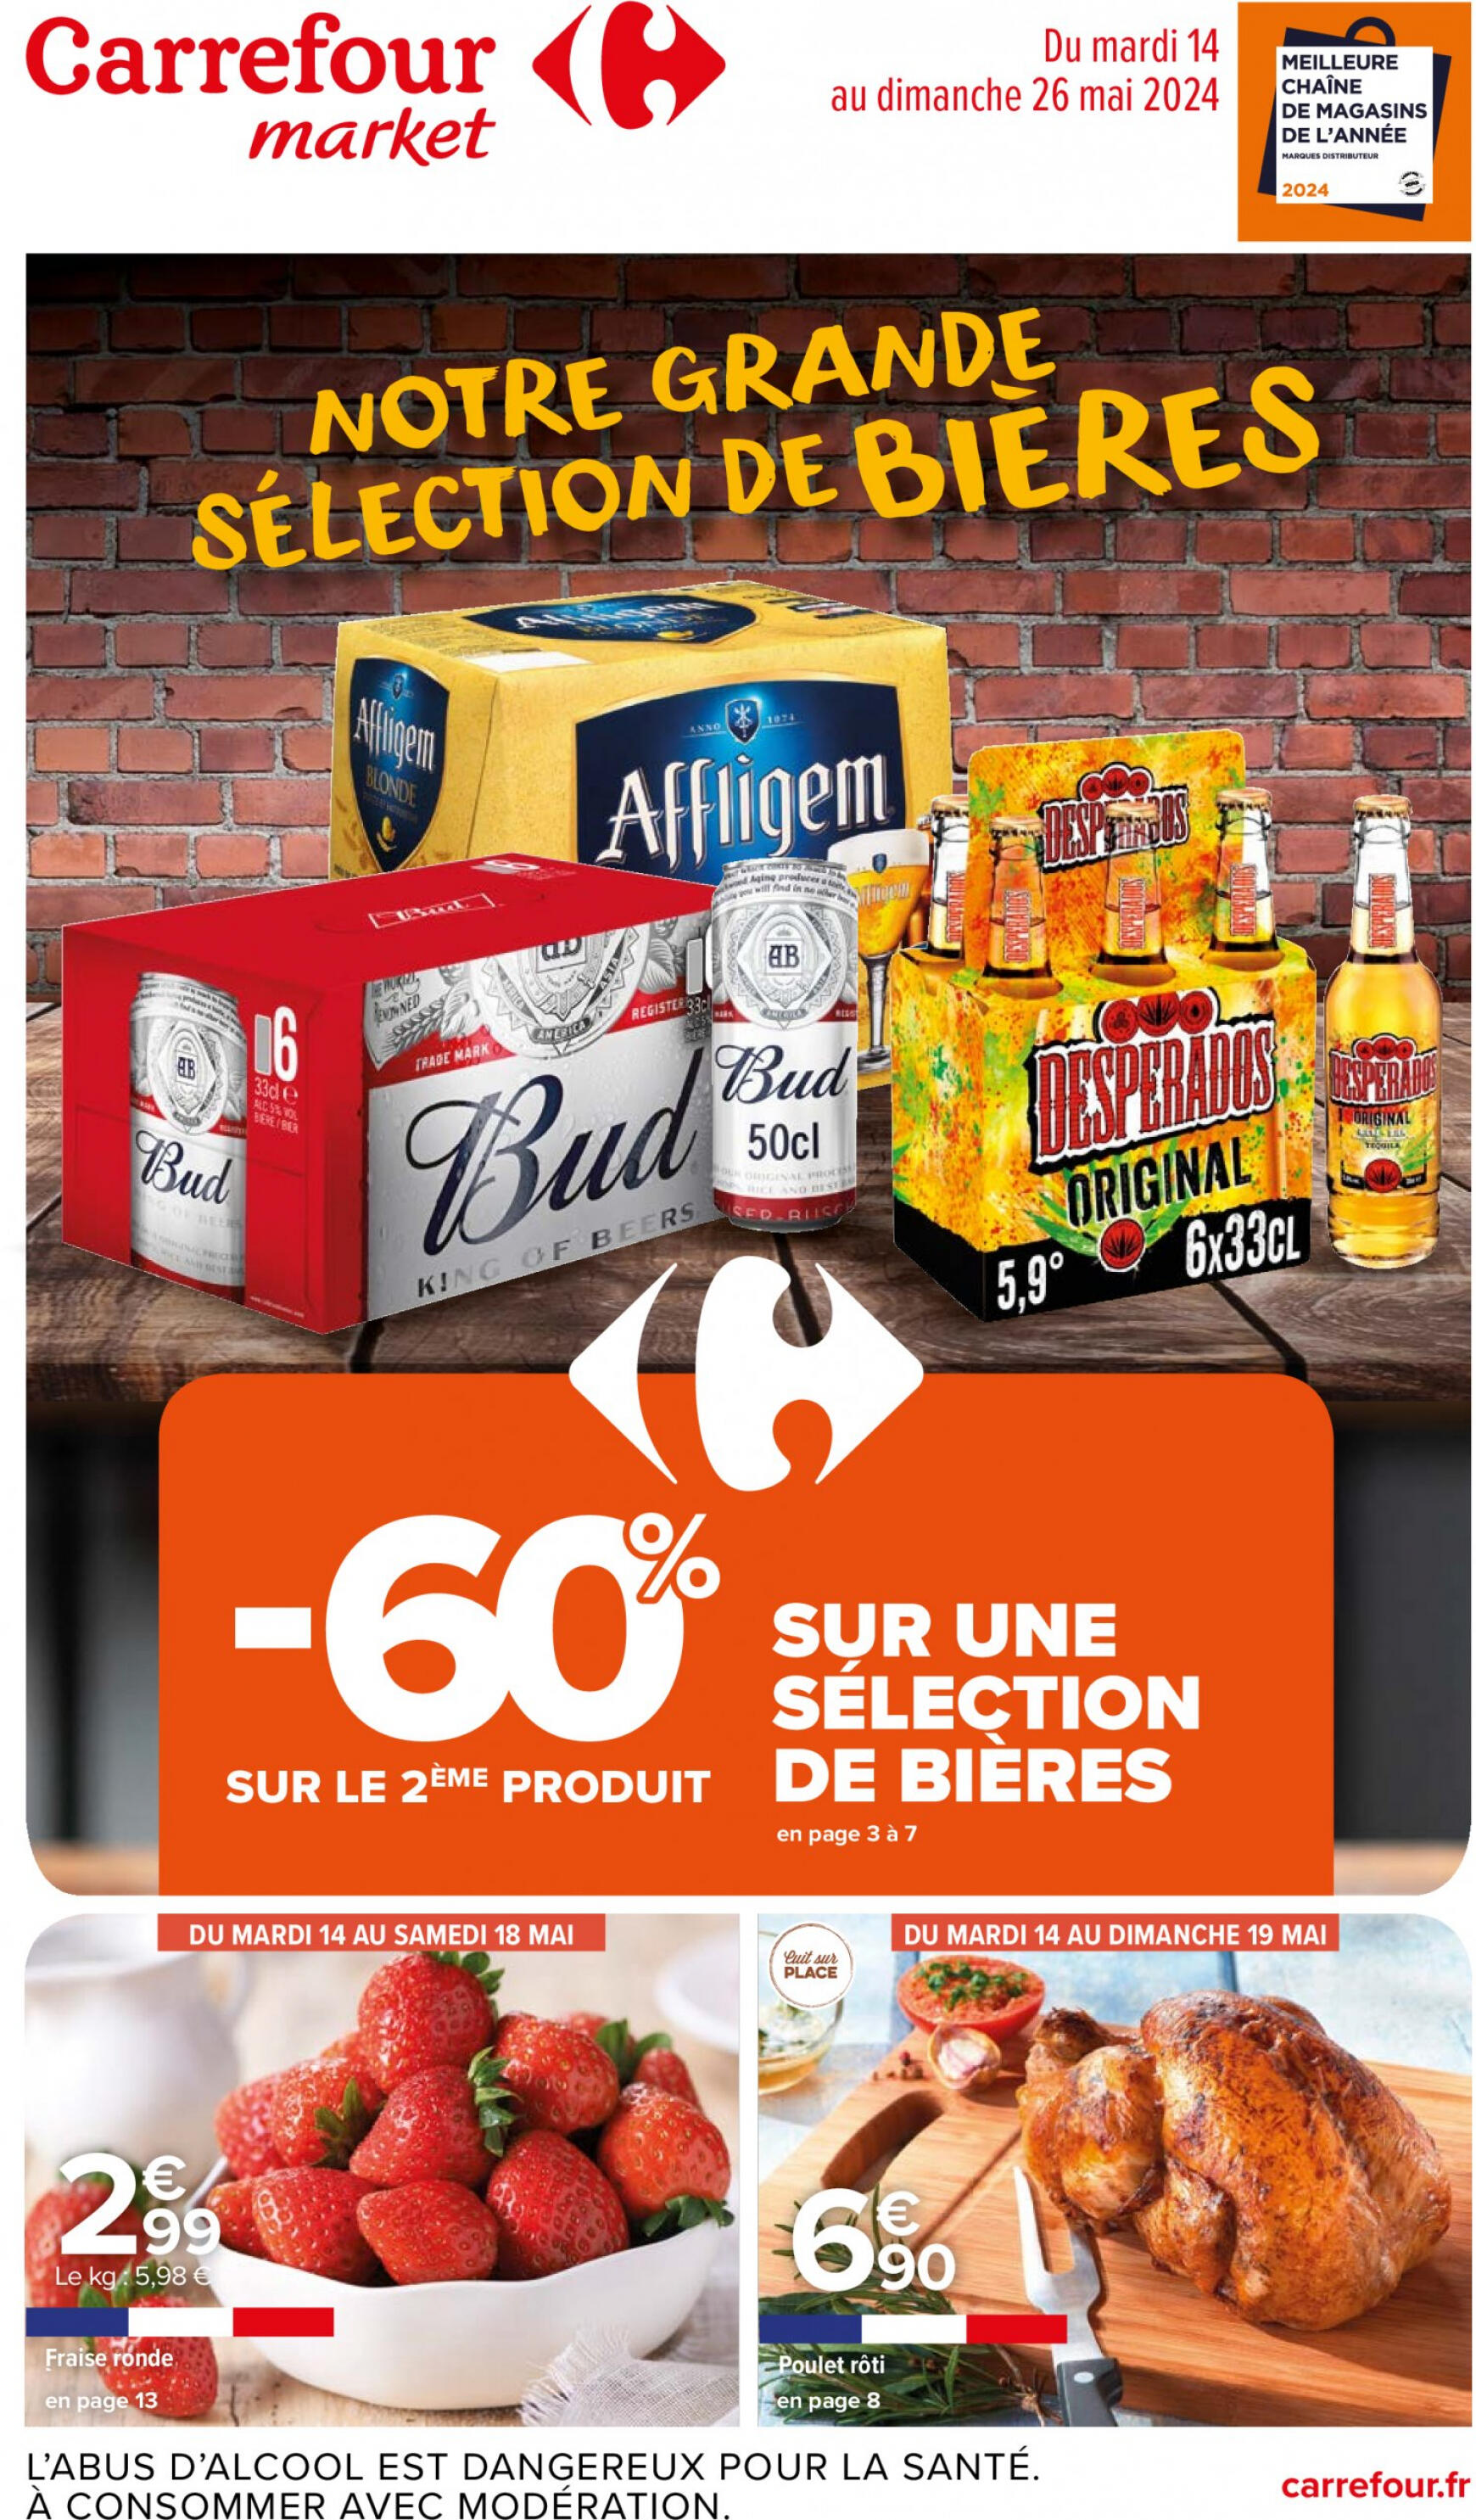 carrefour-market - Prospectus Carrefour Market - Notre grande sélection de bières actuel 14.05. - 26.05. - page: 1